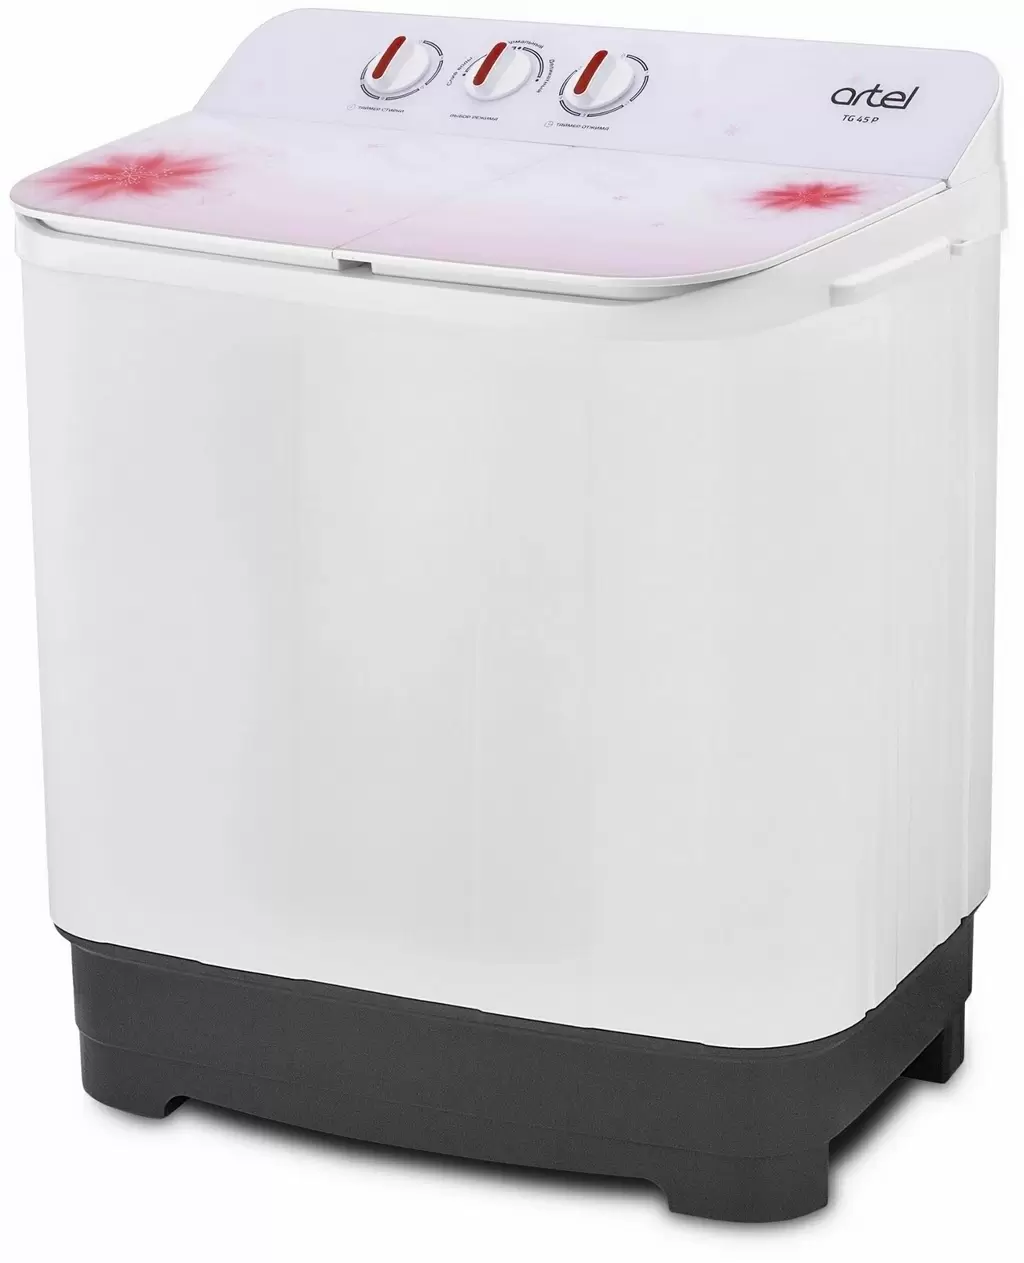 Maşină de spălat rufe Artel TG 45, alb/roșu